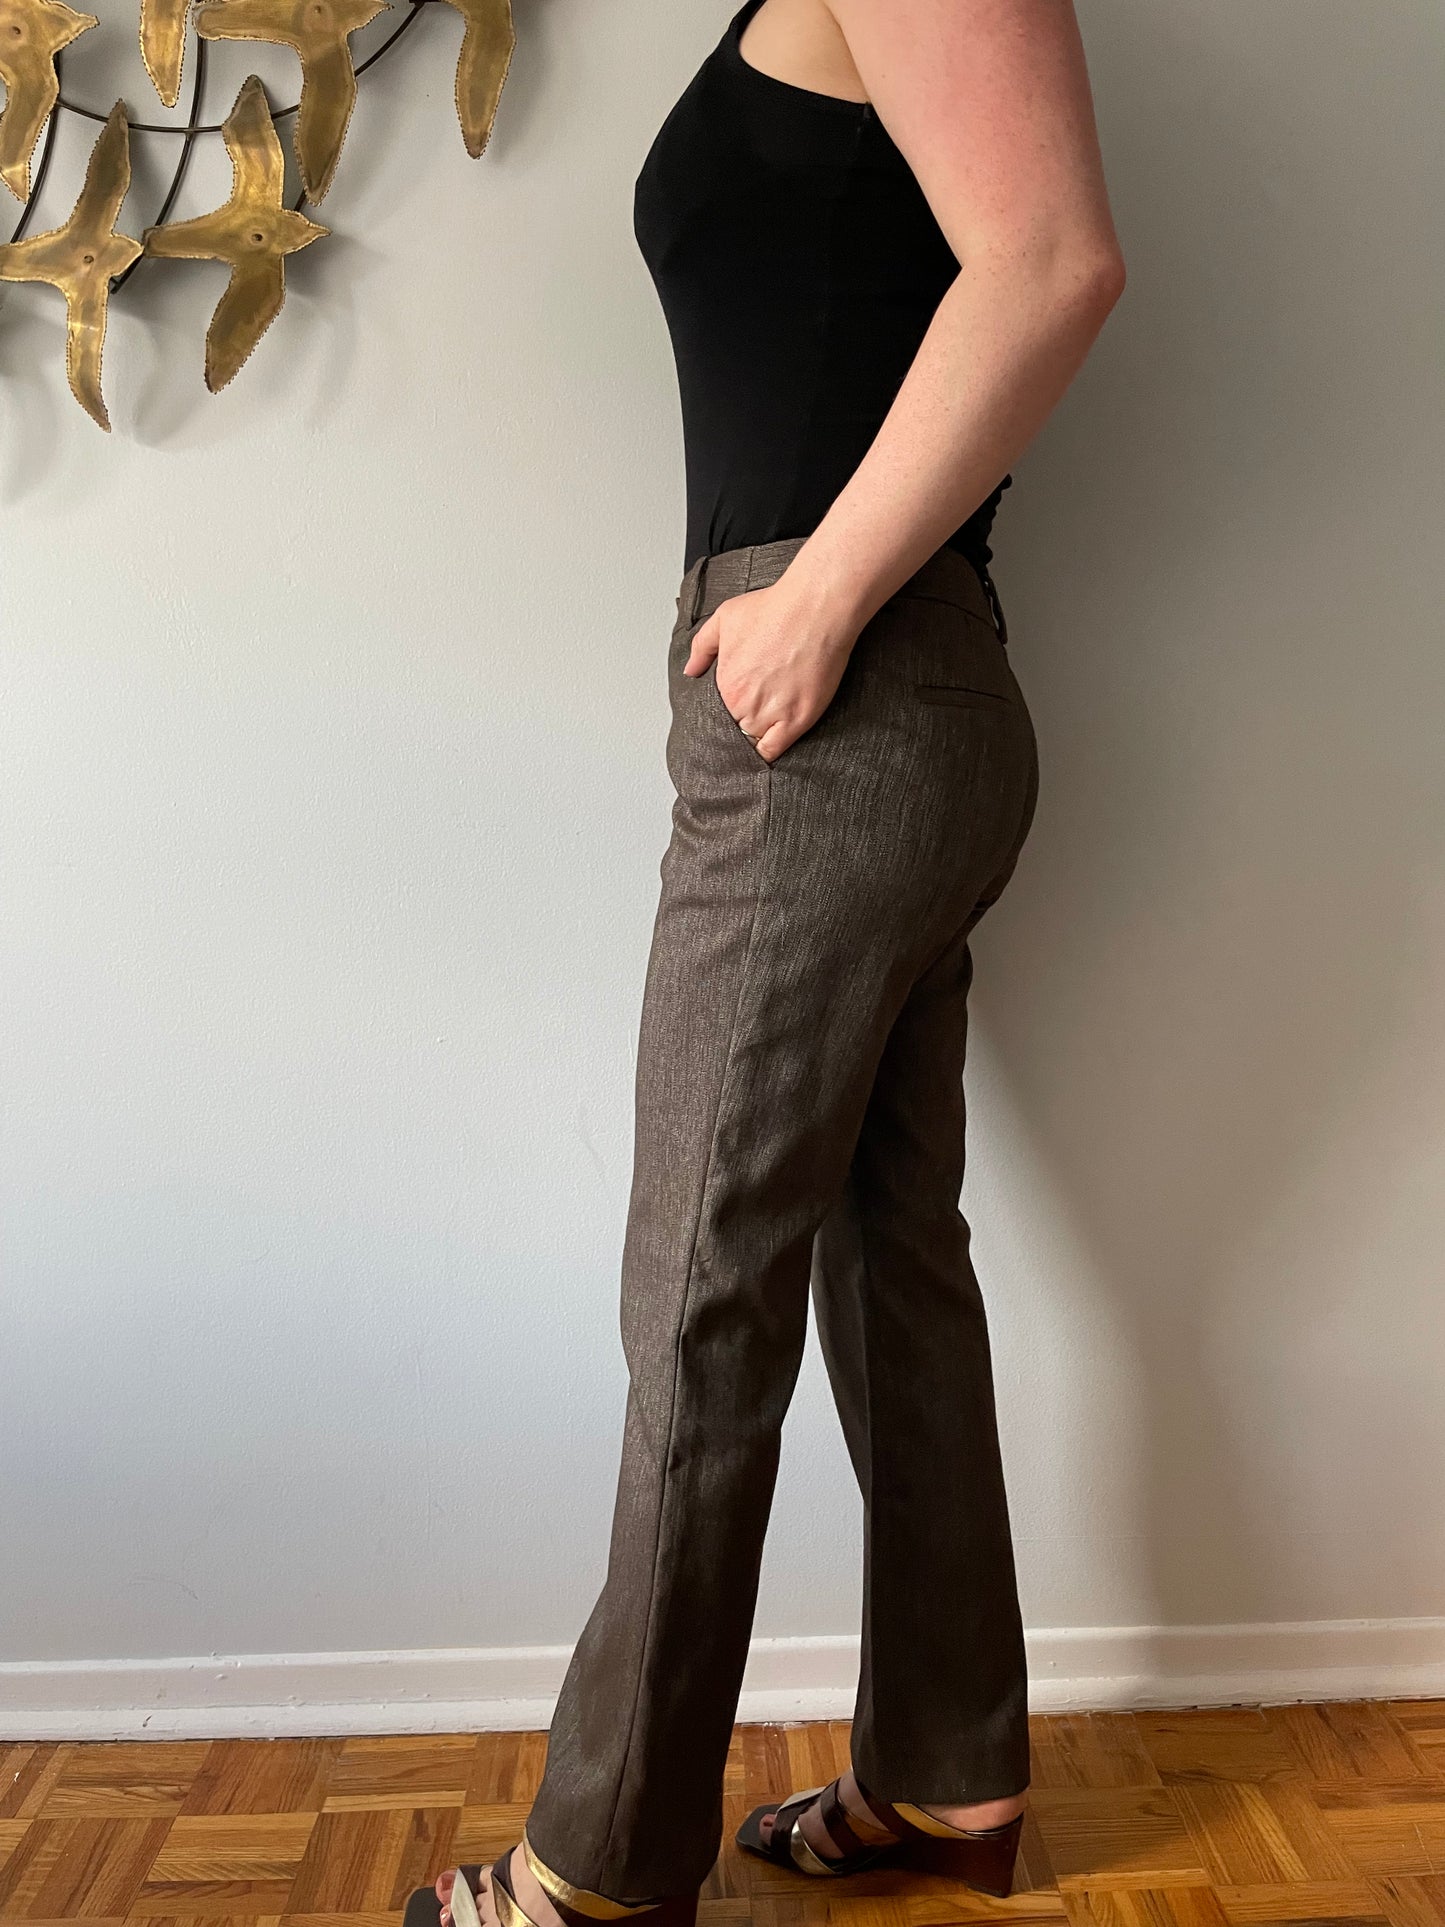 MEXX Brown Shiny Wide Leg Trouser Pants - Size 36 (Small)